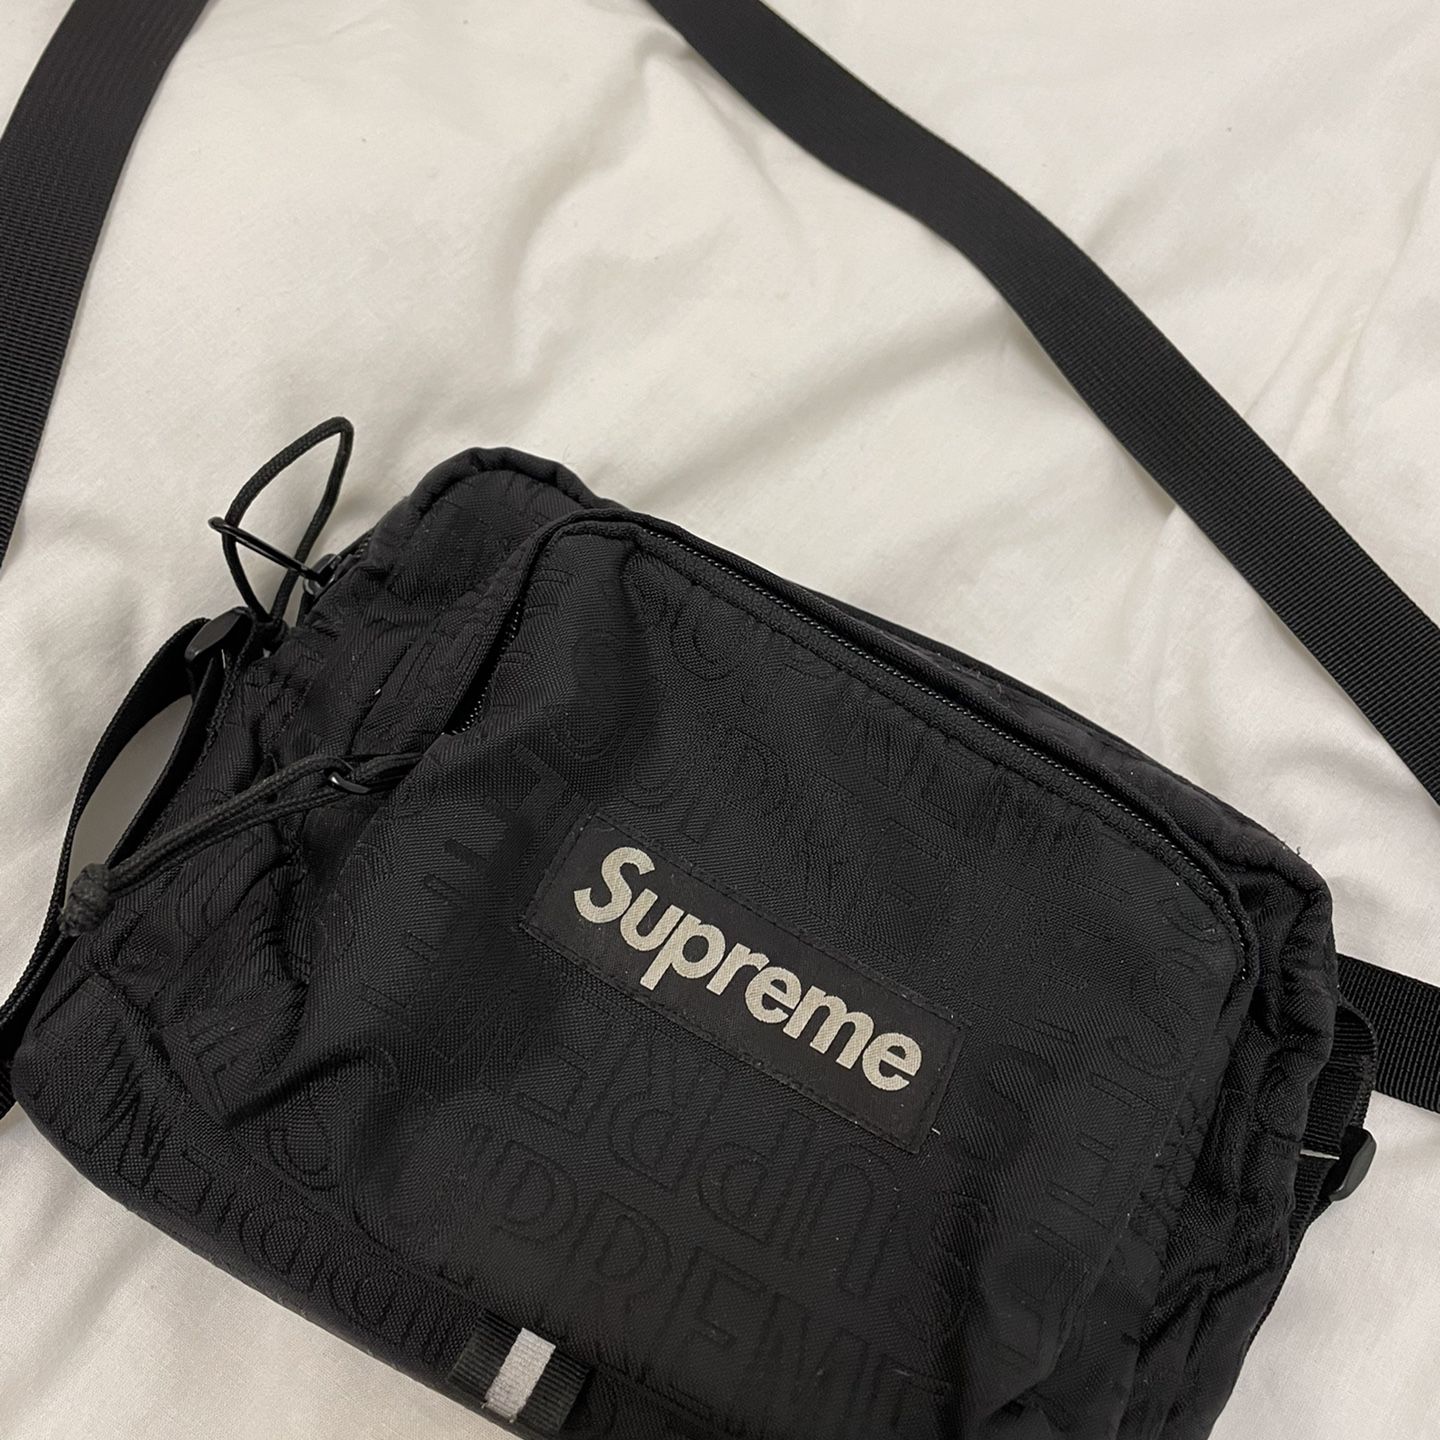 🚨STEAL🚨 Supreme Shoulder Bag (SS19) Black $140